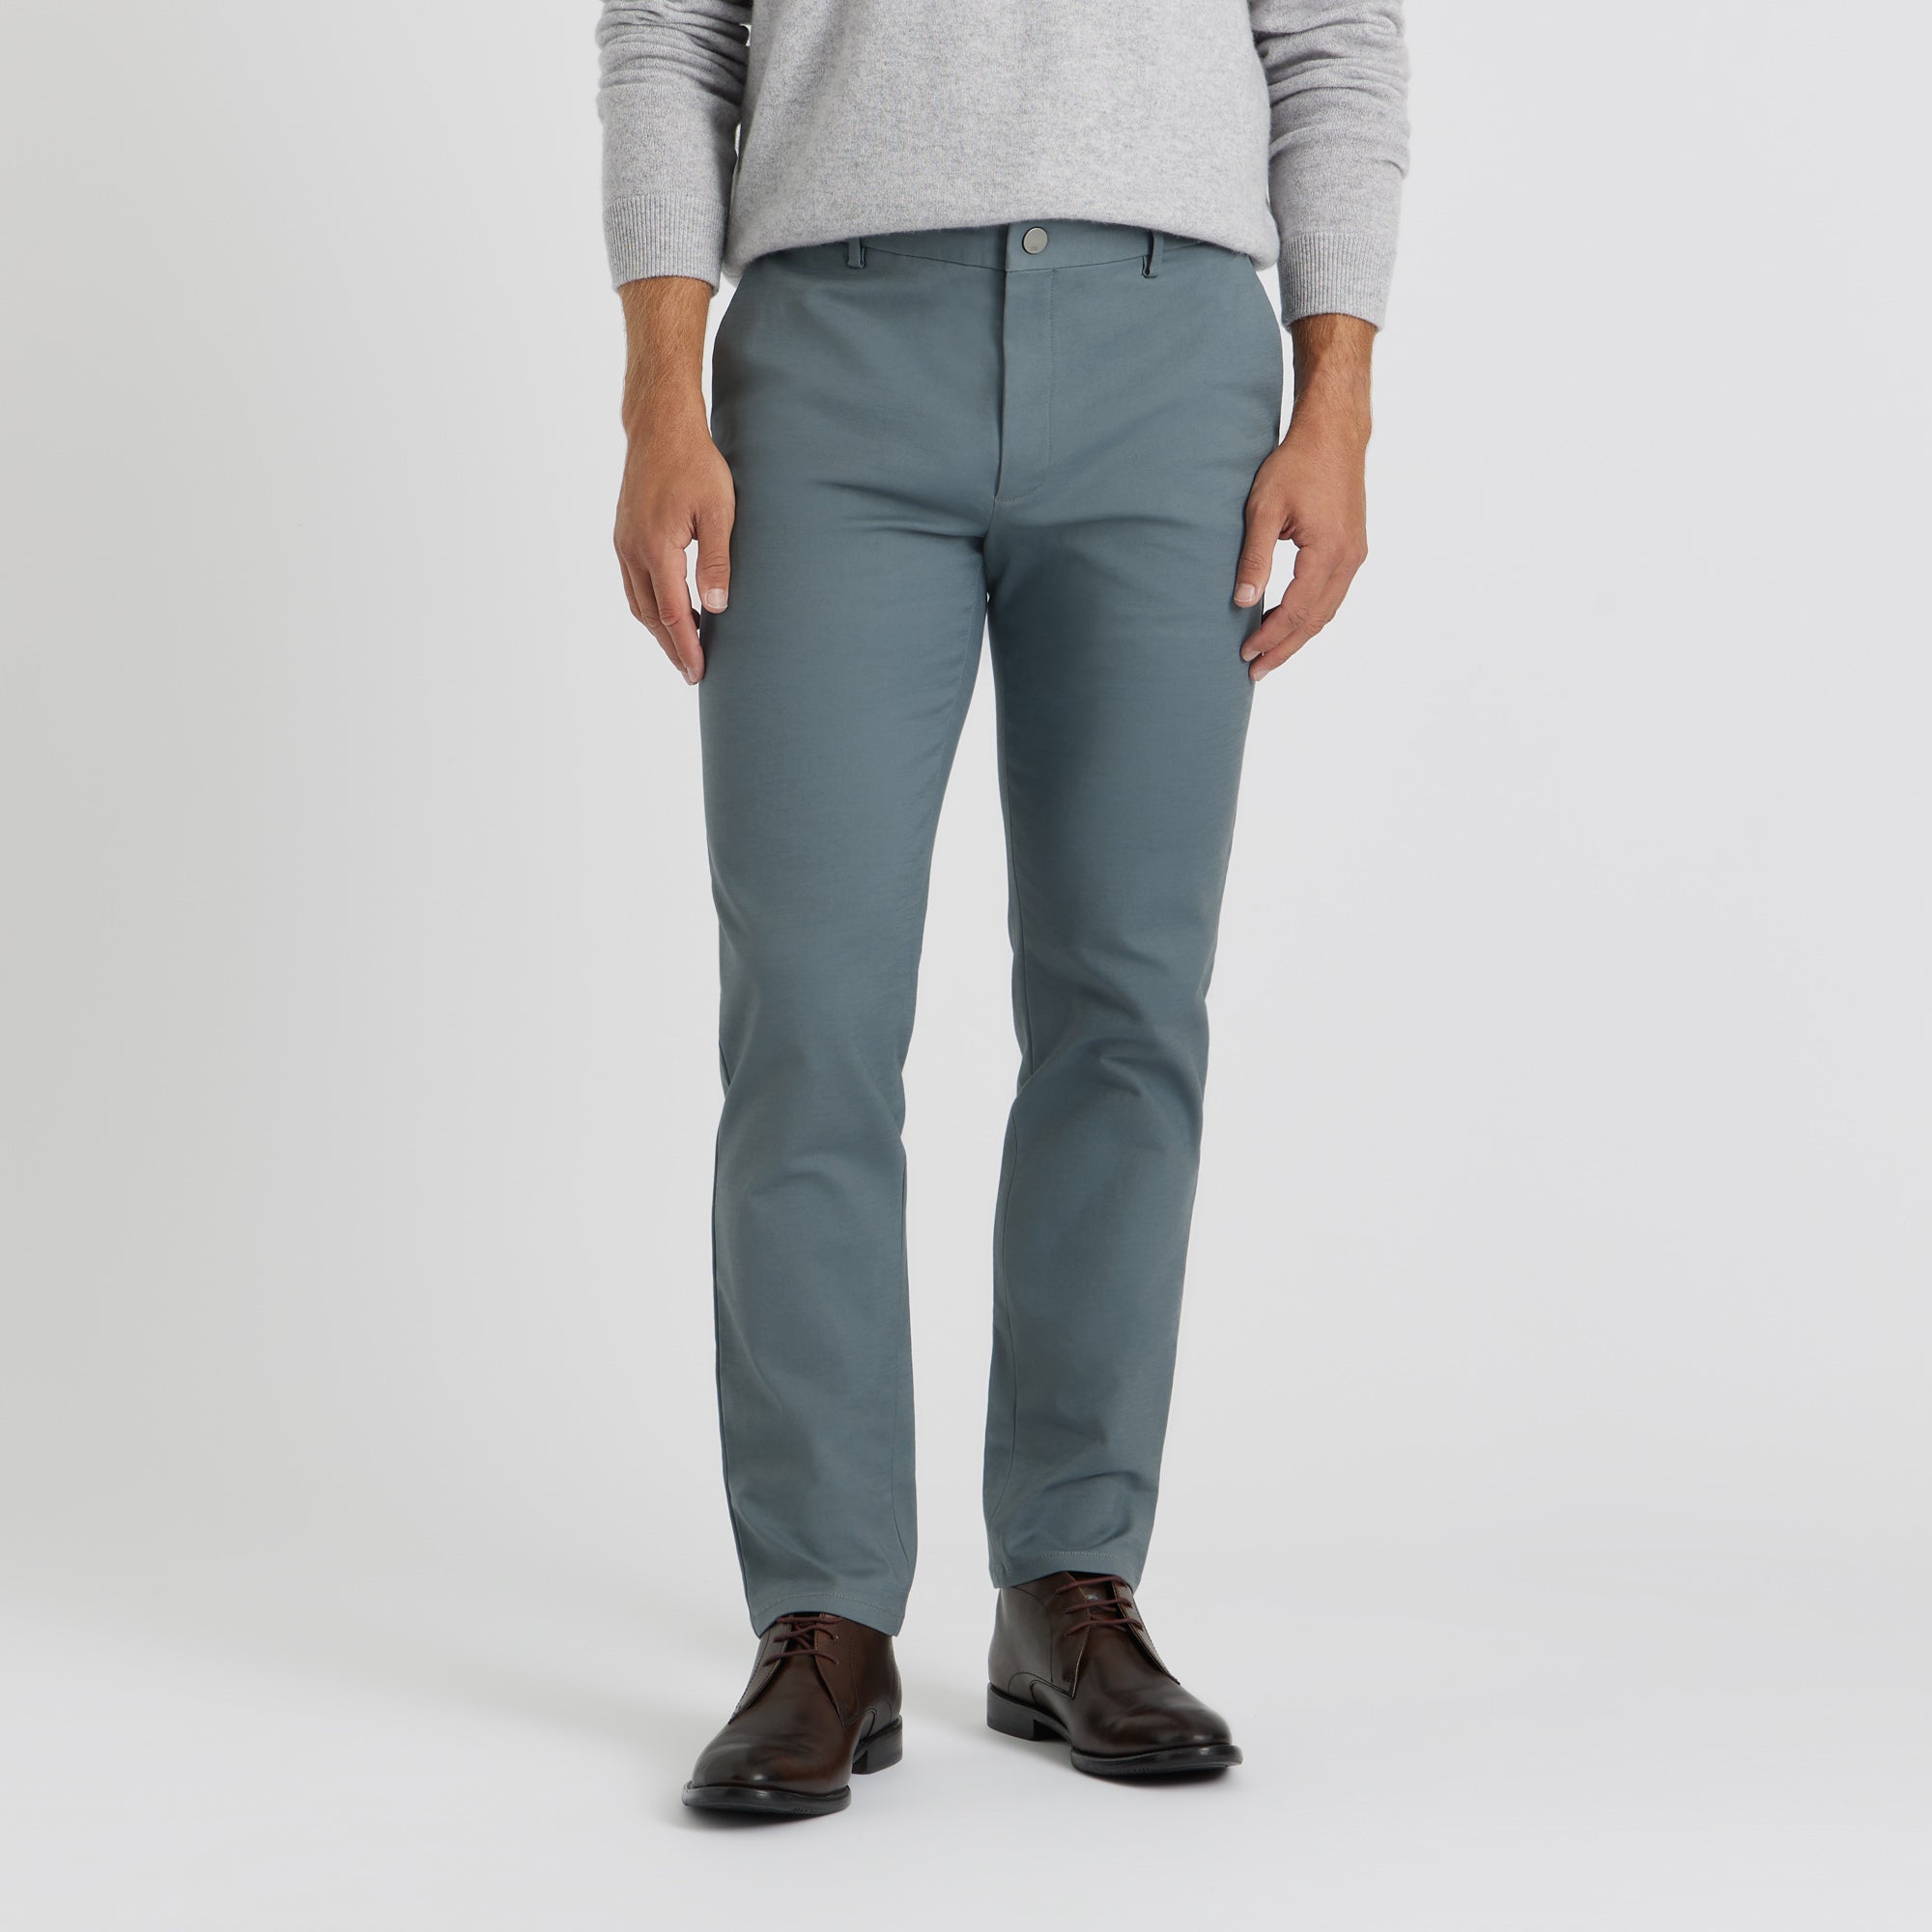 Grey Trousers | Custom-fit menswear | SPOKE. - SPOKE